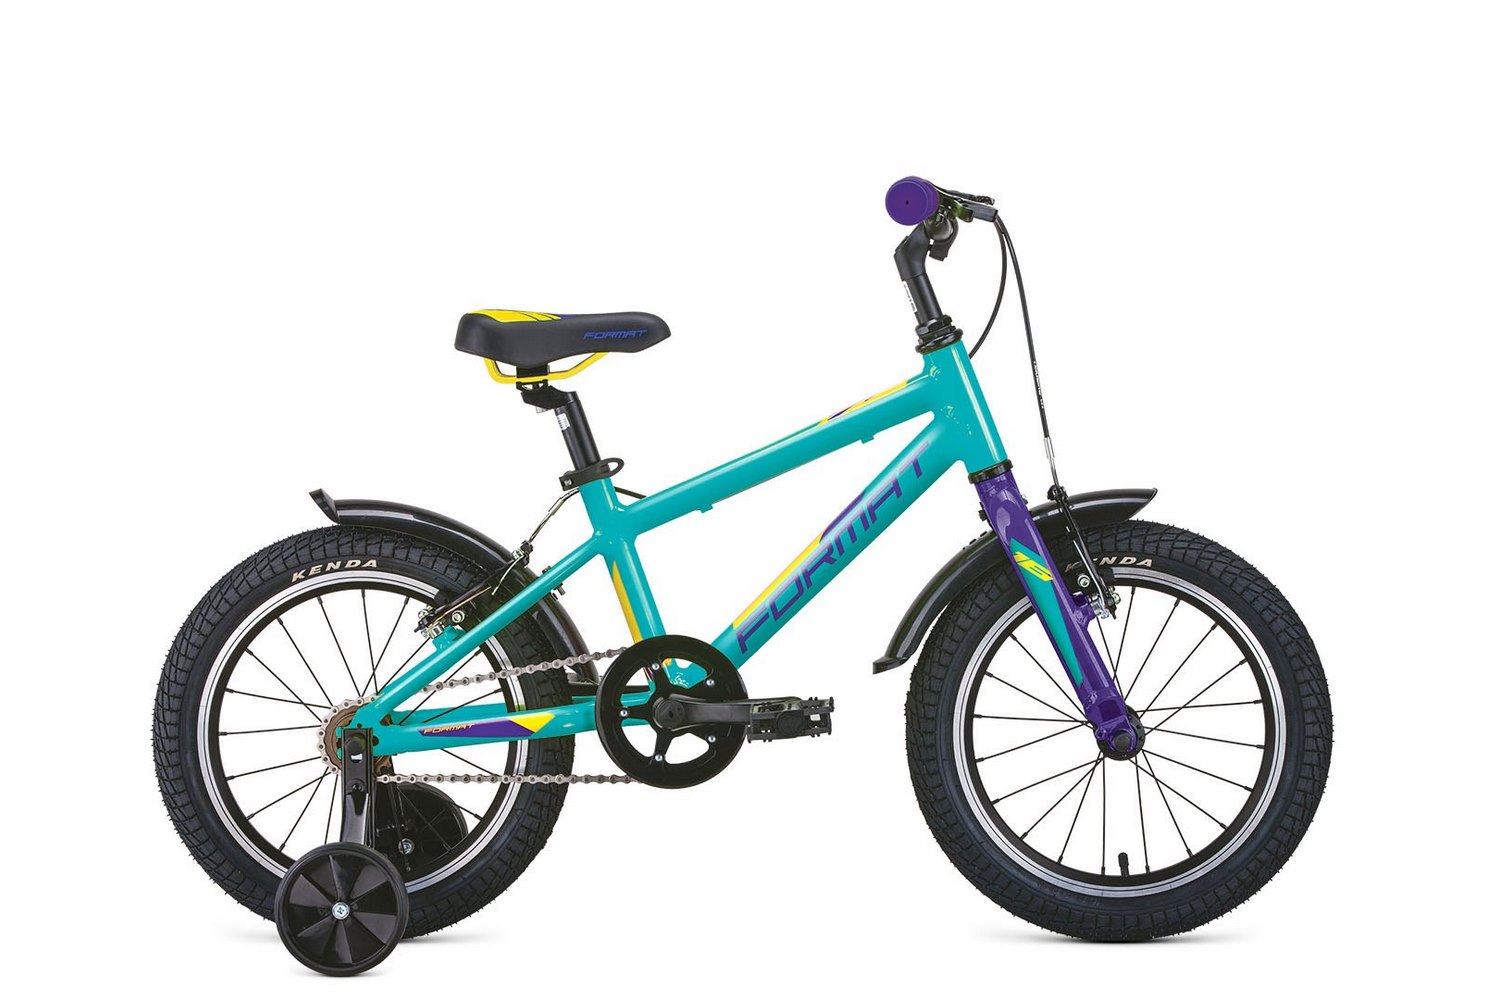  Отзывы о Детском велосипеде Format Format Kids 16 2021